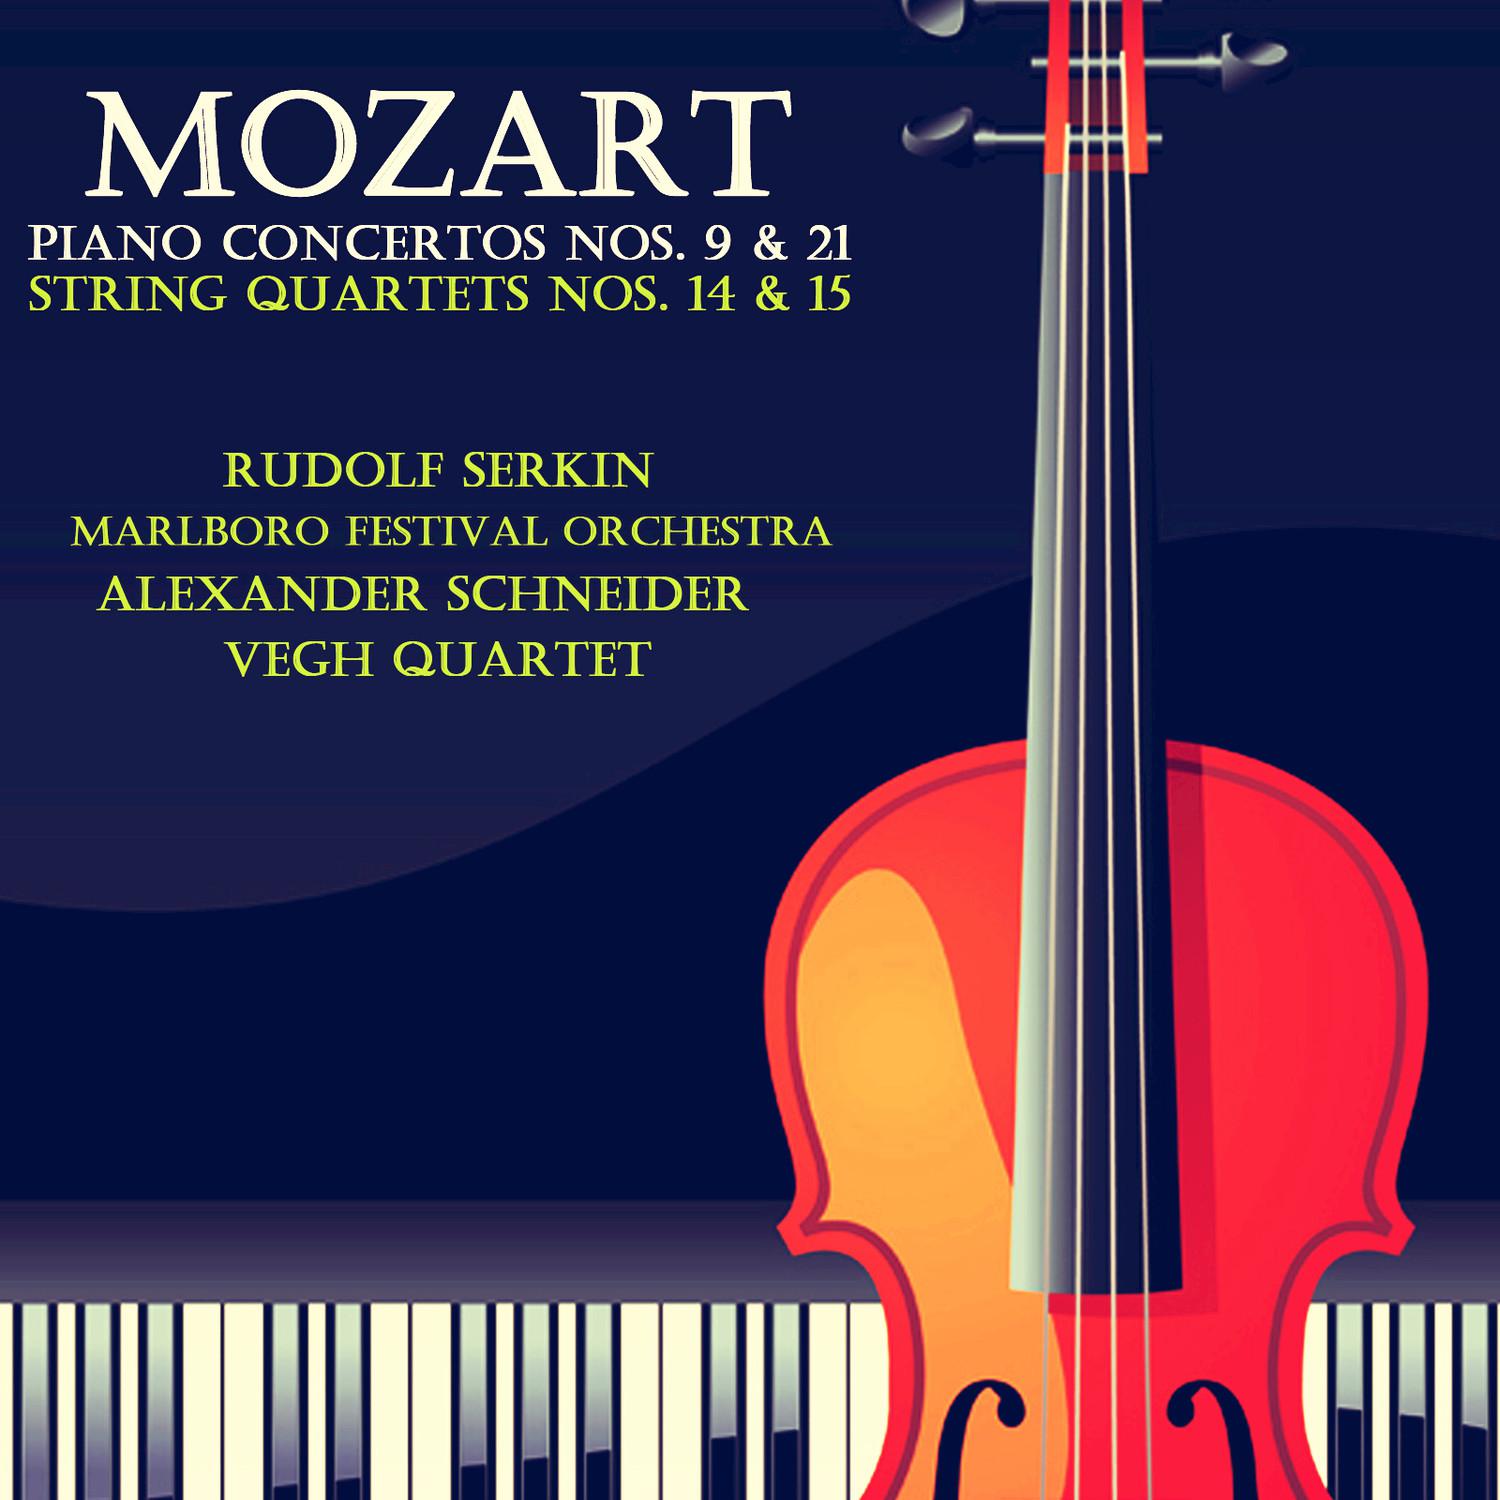 String Quartet No. 15 in D Minor, K. 421: IV. Allegretto ma non troppo